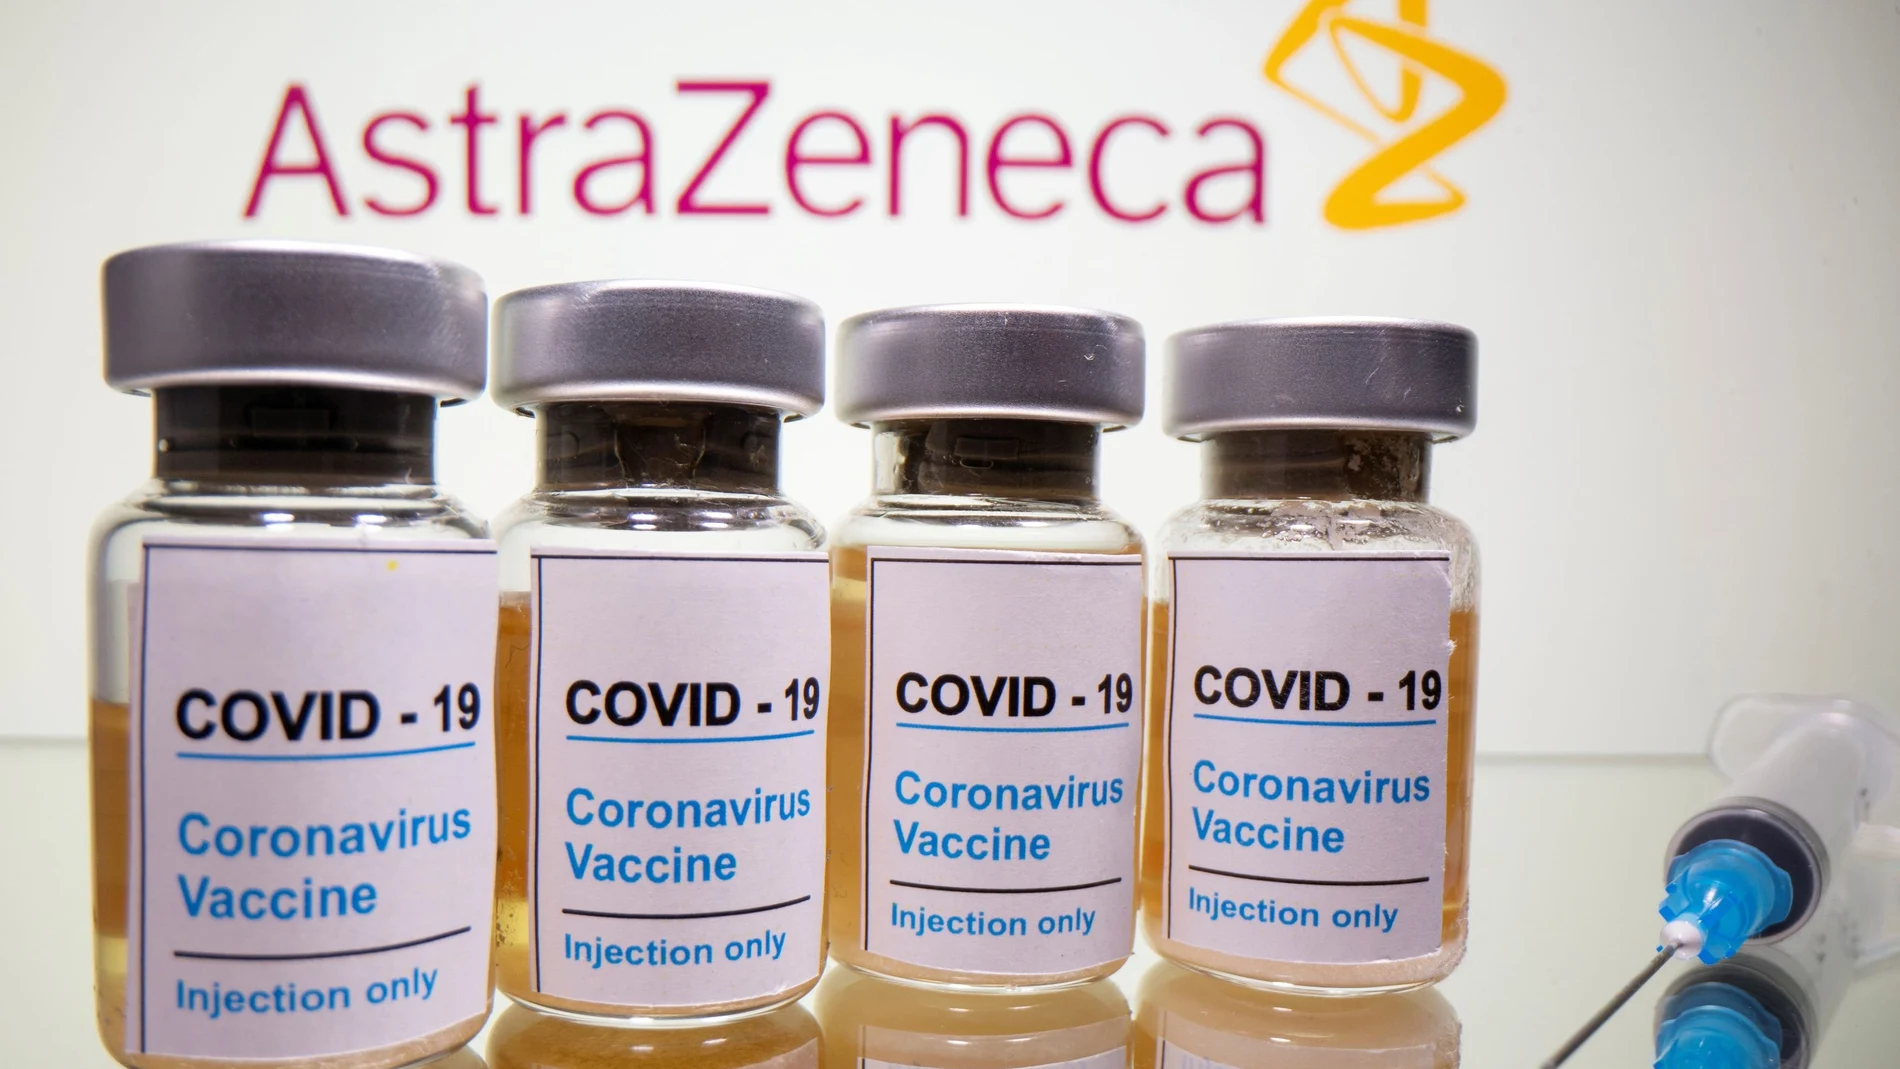 La vacuna de AstraZeneca ha logrado el visto bueno de las autoridades británicas, por lo que podrá distribuirse a partir de los próximos días